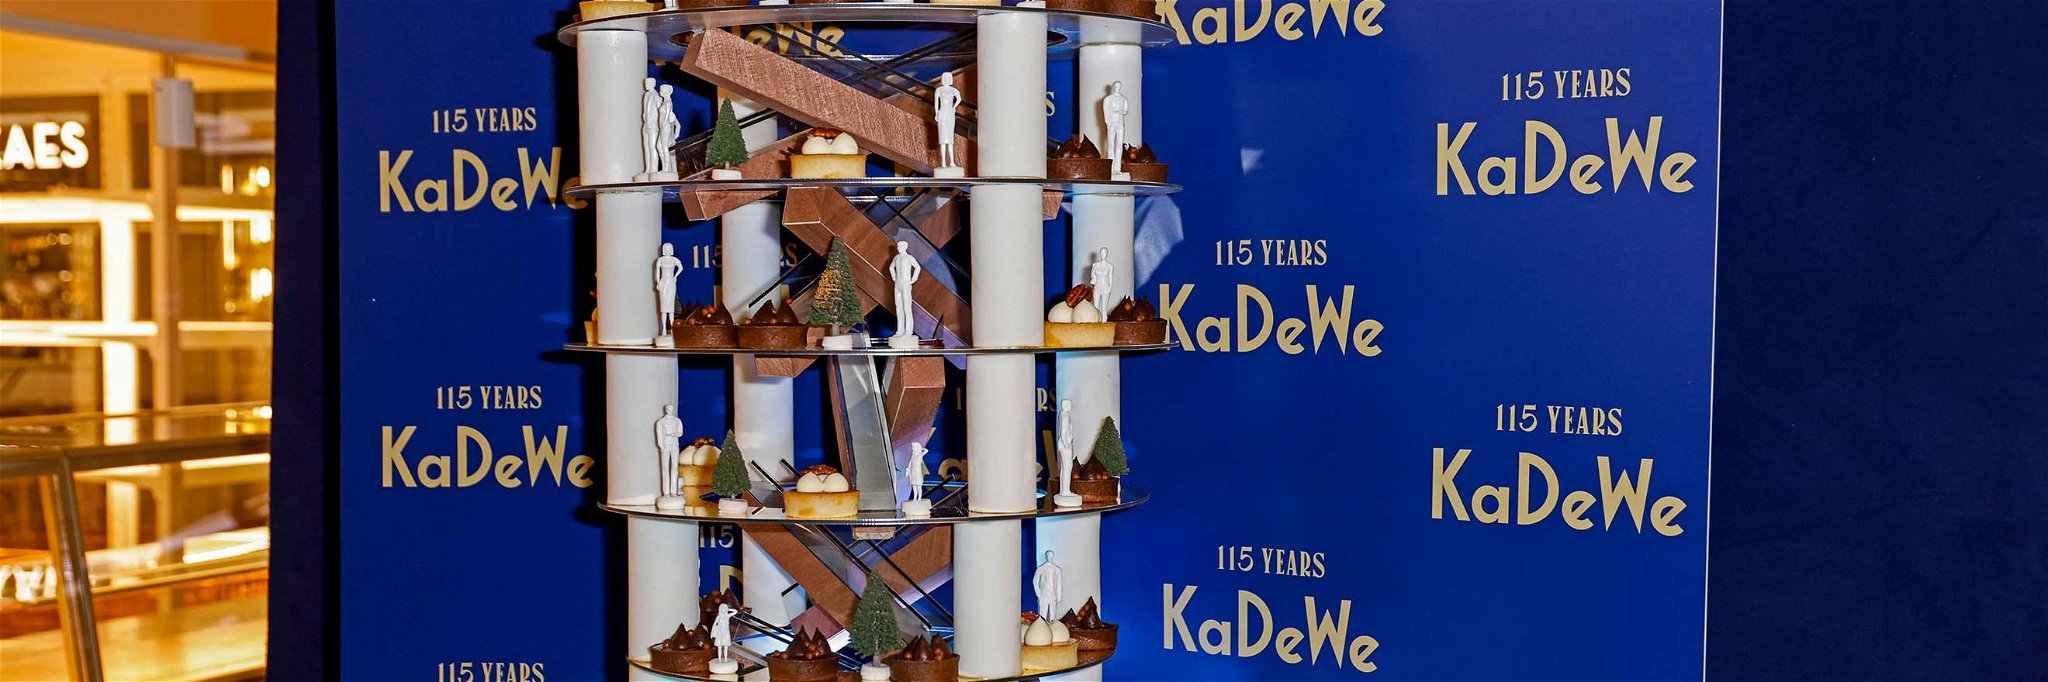 Die imposante Torte war eines der kulinarischen Highlights der Feier im KaDeWe.